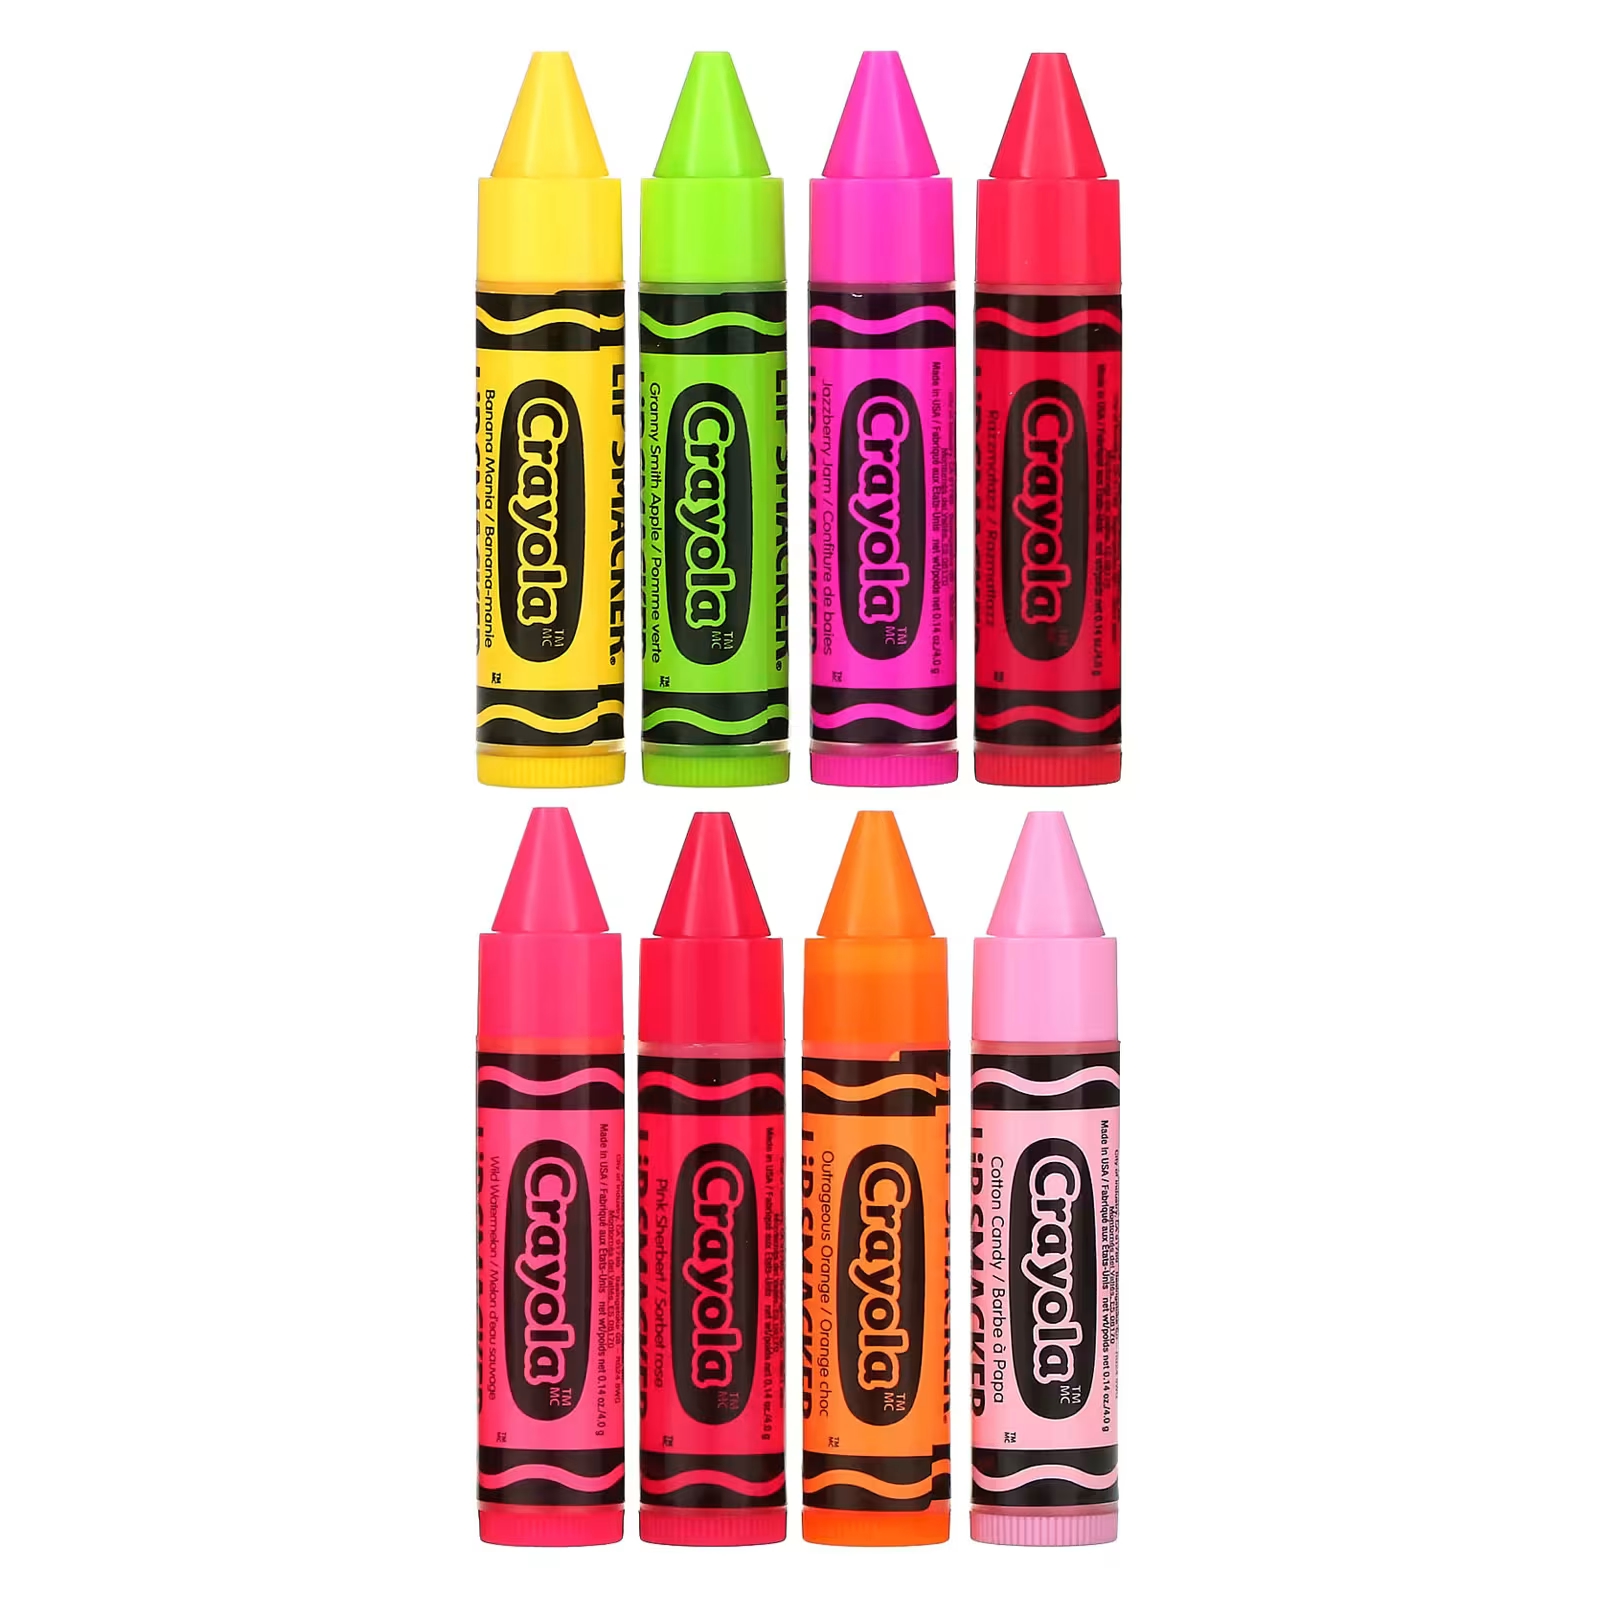 Lip Smacker Crayola Бальзам для губ «Вечеринка», 8 штук по 0,14 унции (4 г) каждая цена и фото